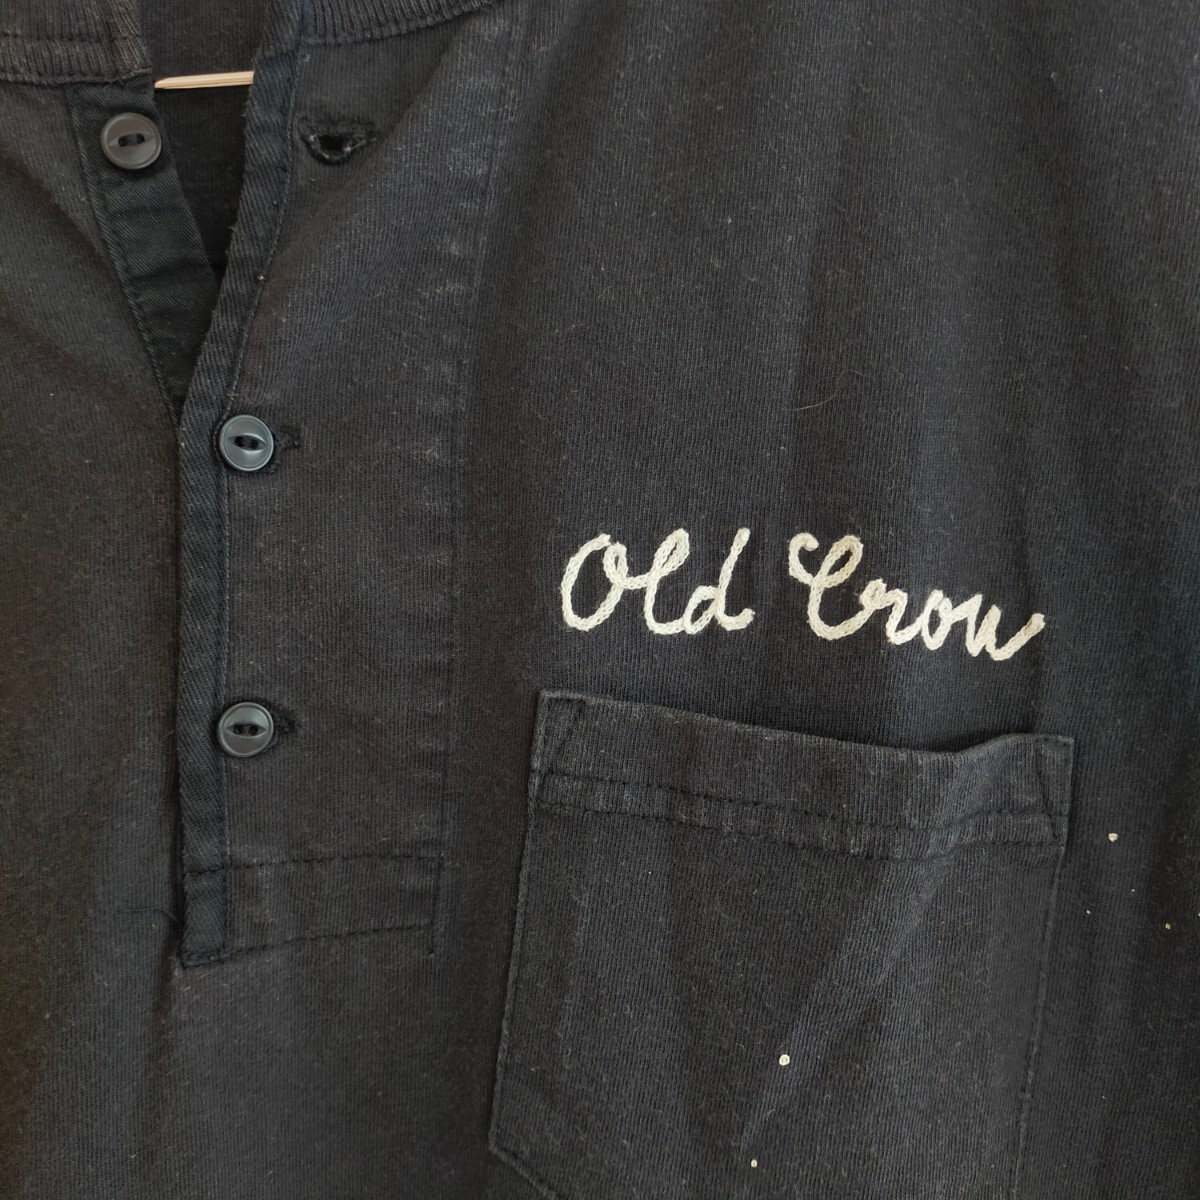 OLD CROW オールドクロウ GLAD HAND グラッドハンド ヘンリーネック 半袖Tシャツ ポケット 半袖 ダメージ加工 HIGHLAND PARK M ブラック